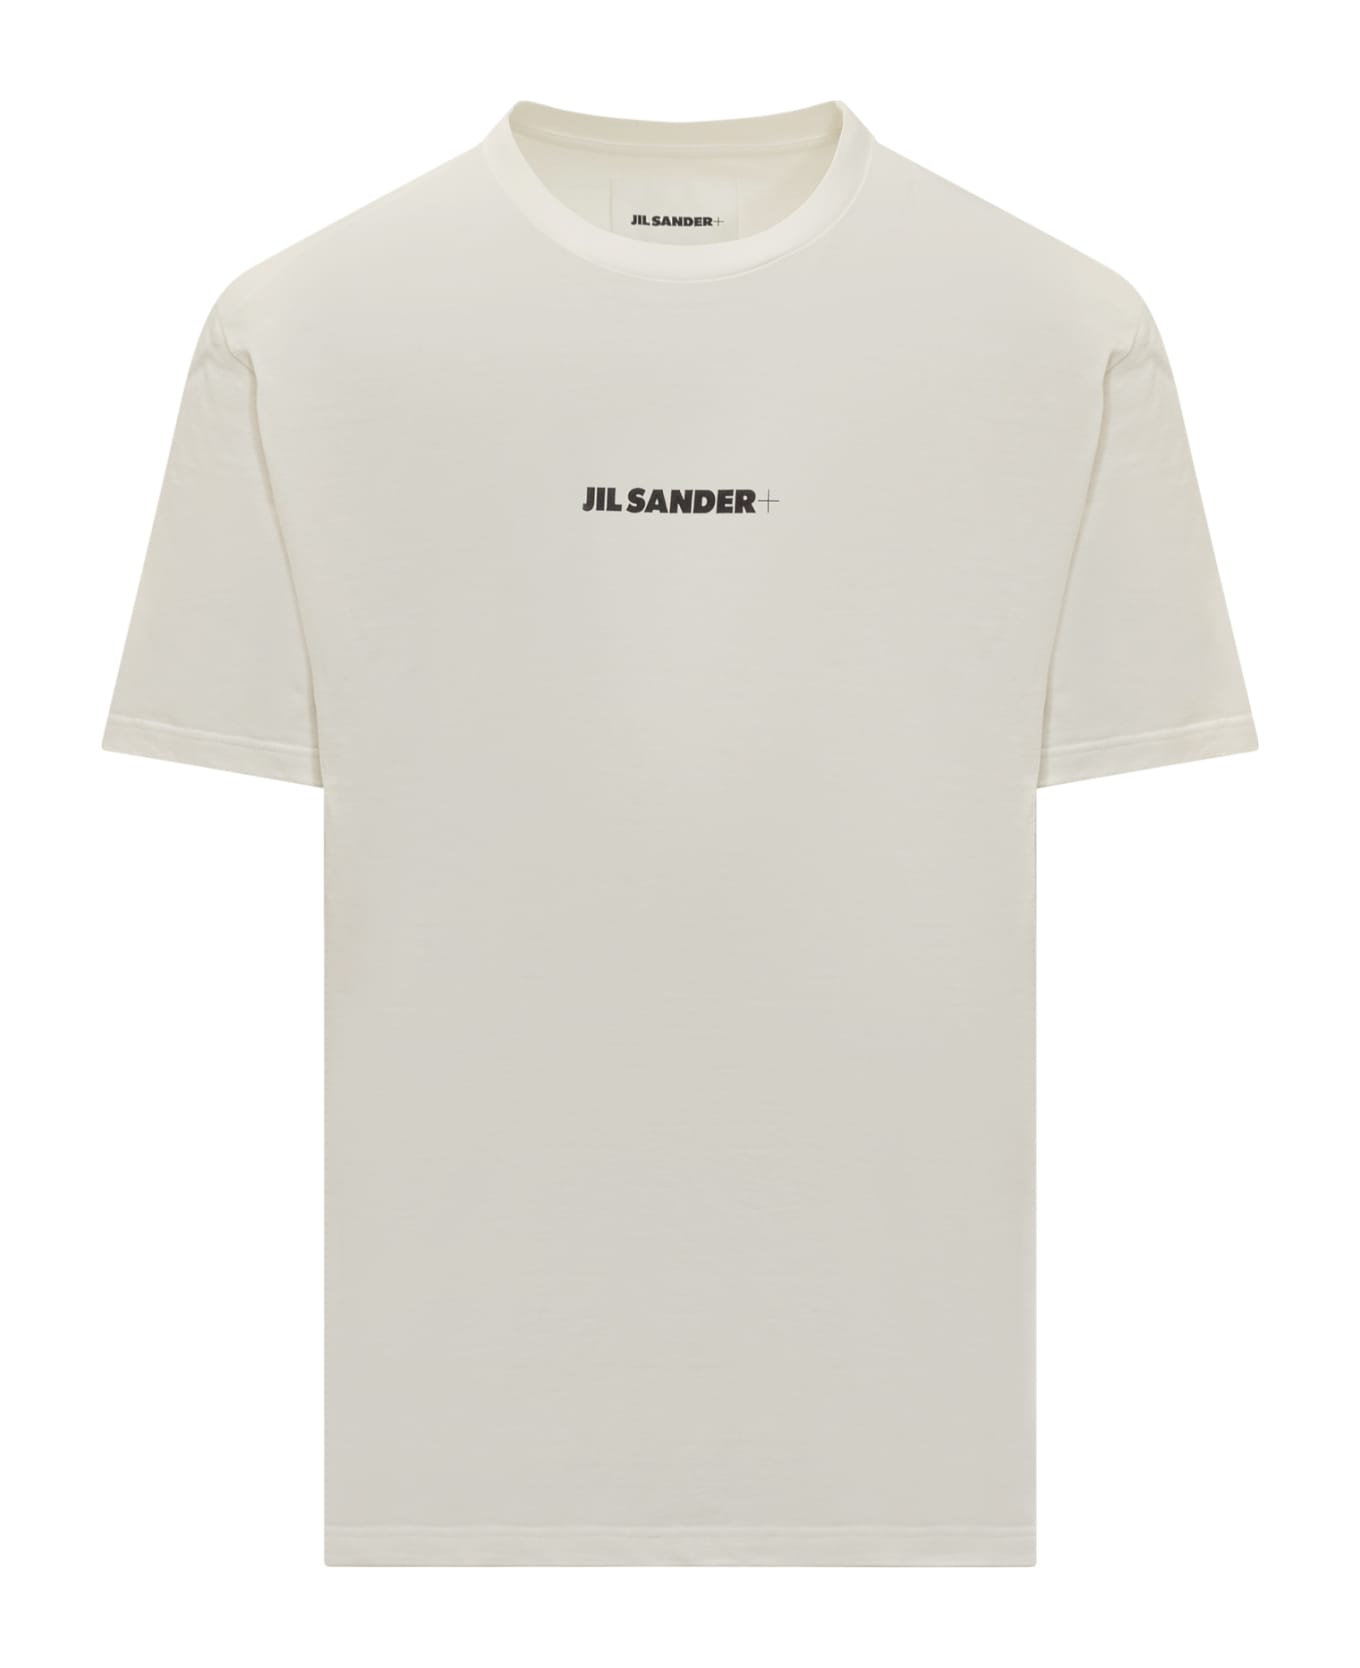 Jil Sander T-shirt - BIANCO